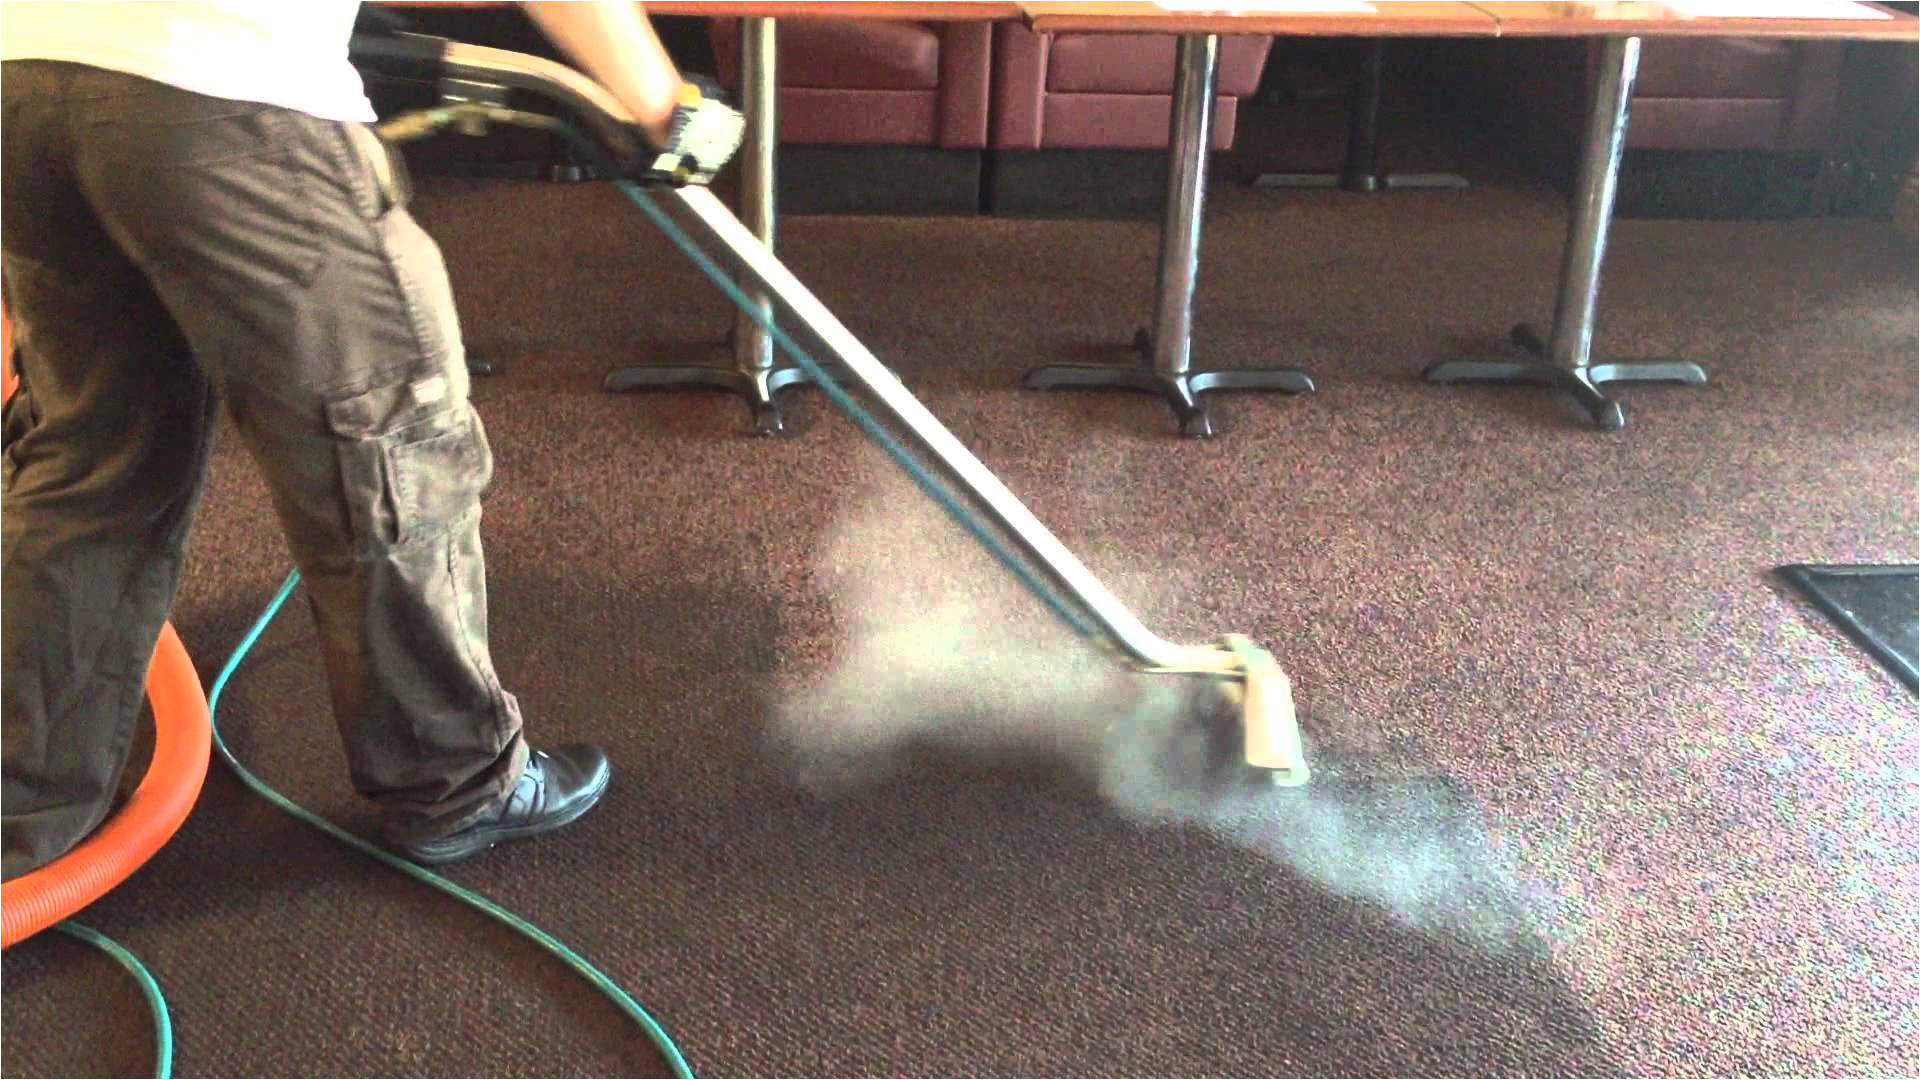 carpet cleaners stafford va lovely steamline best mercial carpet cleaning pany fredericksburg va of carpet cleaners stafford va jpg